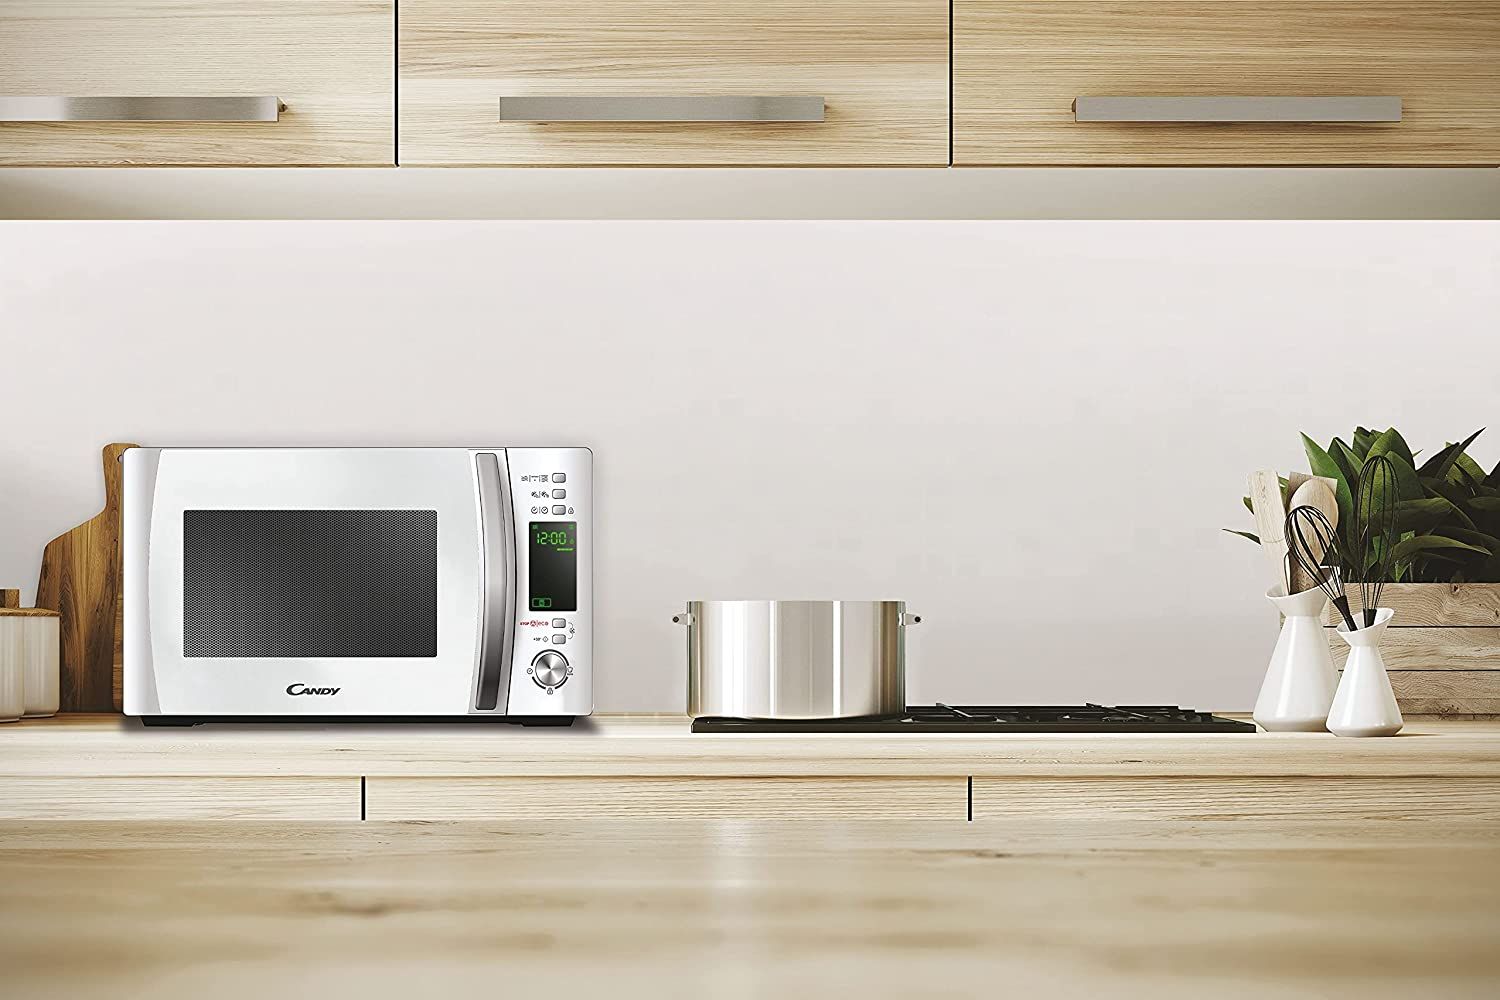 pequeños electrodomésticos y utensilios de cocina para tu casa, en amazon